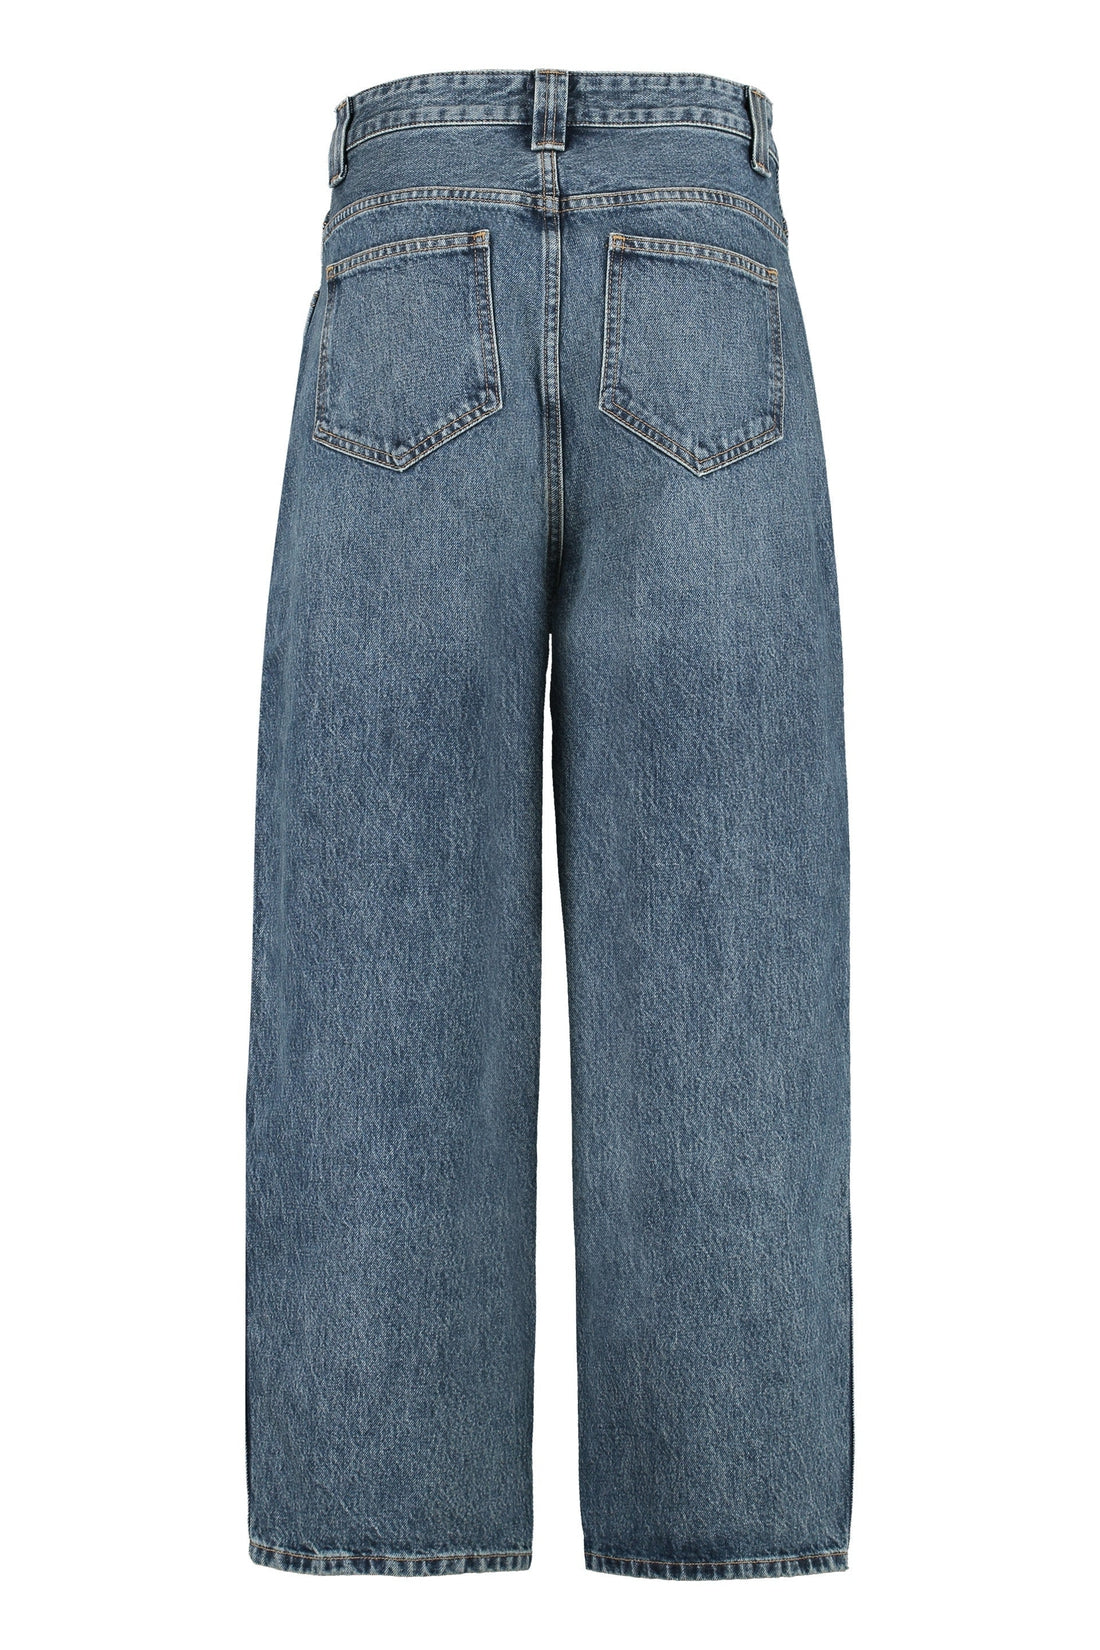 Khaite-OUTLET-SALE-The Preen Jean wide-leg jeans-ARCHIVIST